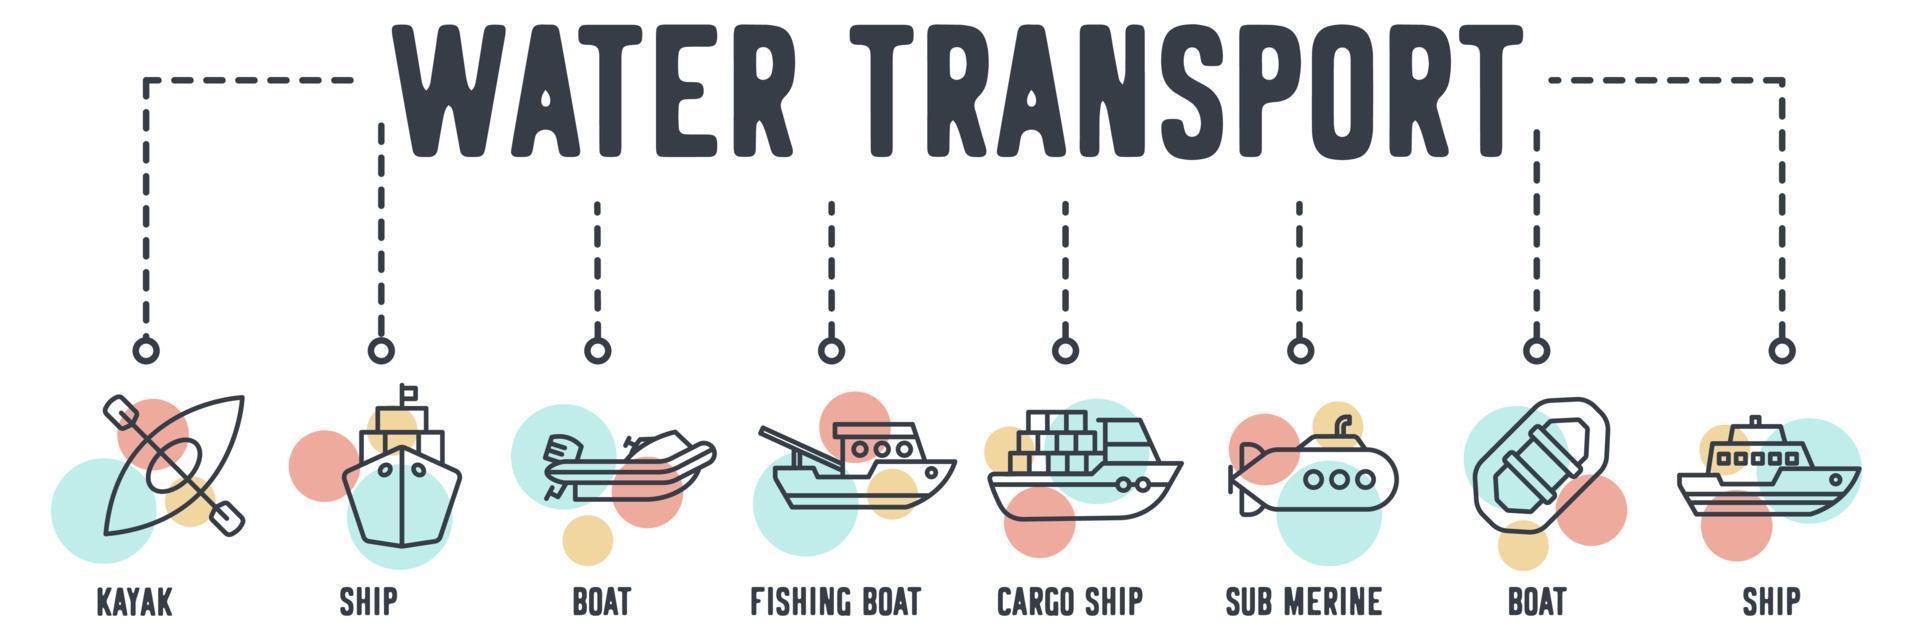 ícone de web de transporte de água. caiaque, navio, barco, barco de pesca, navio de carga, submarino submarino, barco, conceito de ilustração vetorial de navio. vetor